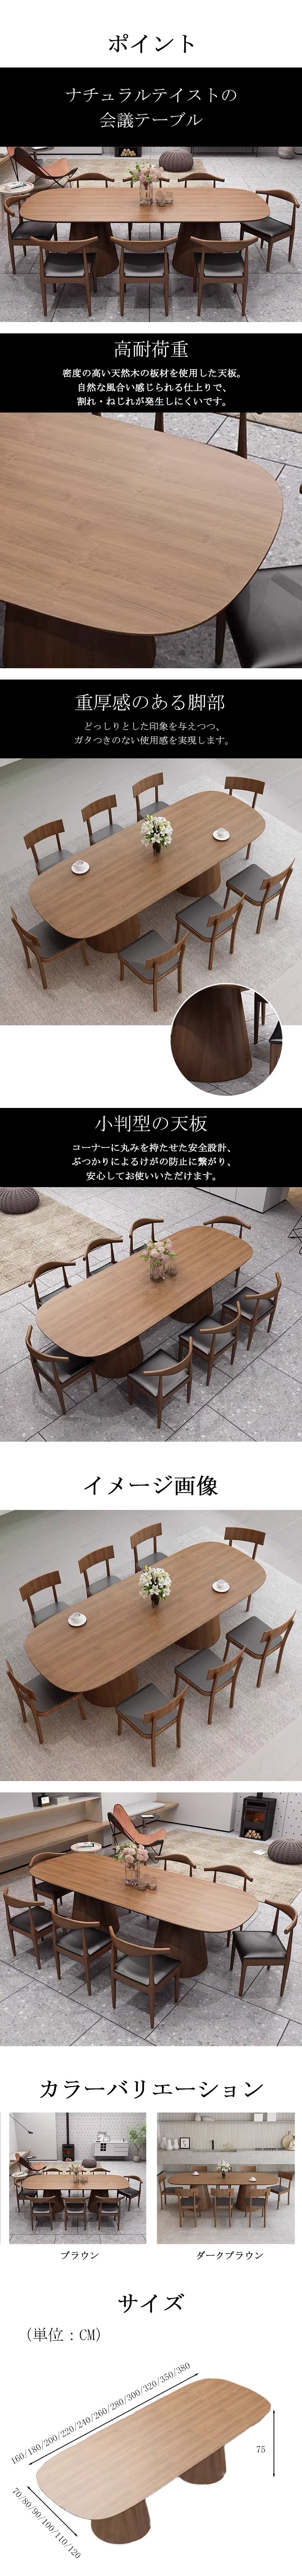 会議用テーブル,ミーティングテーブル,会議机,ミーティングテーブル ...